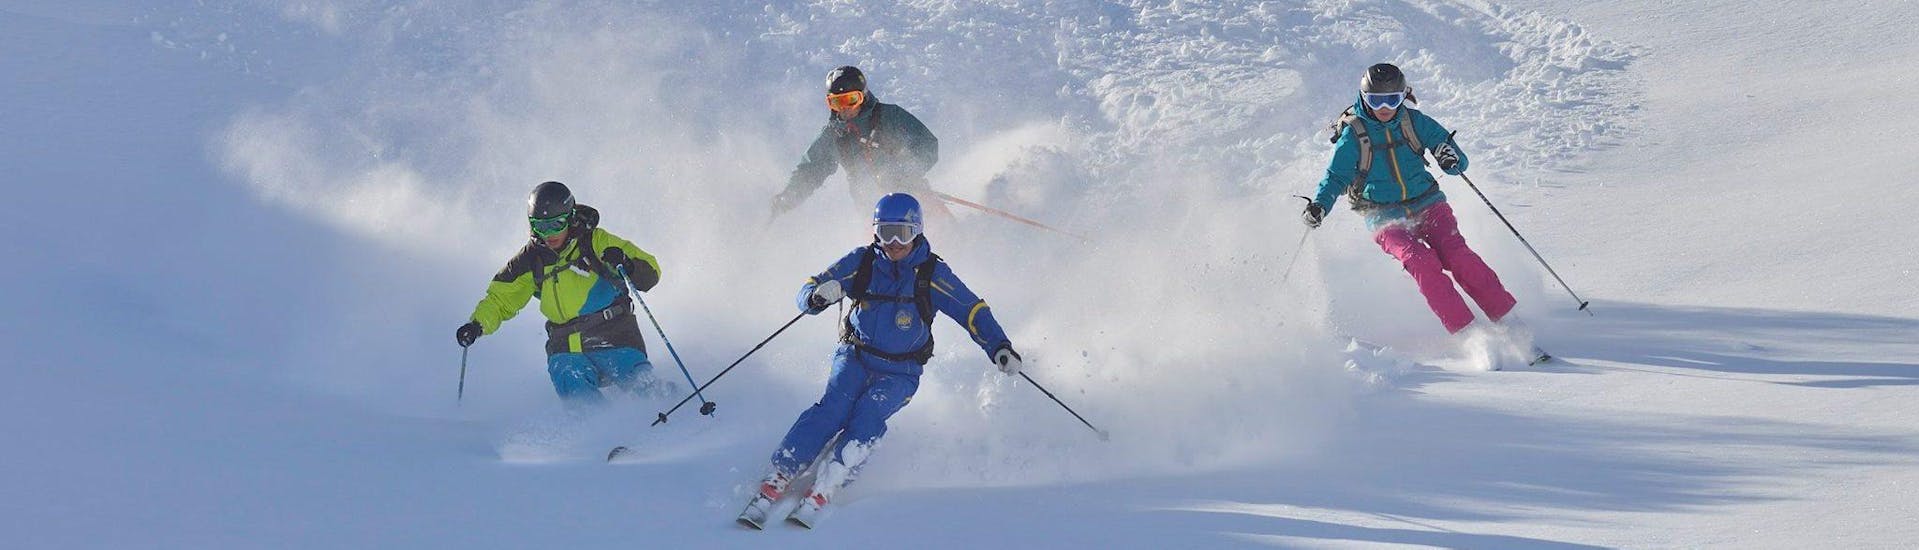 Skikurs für Erwachsene aller Levels.